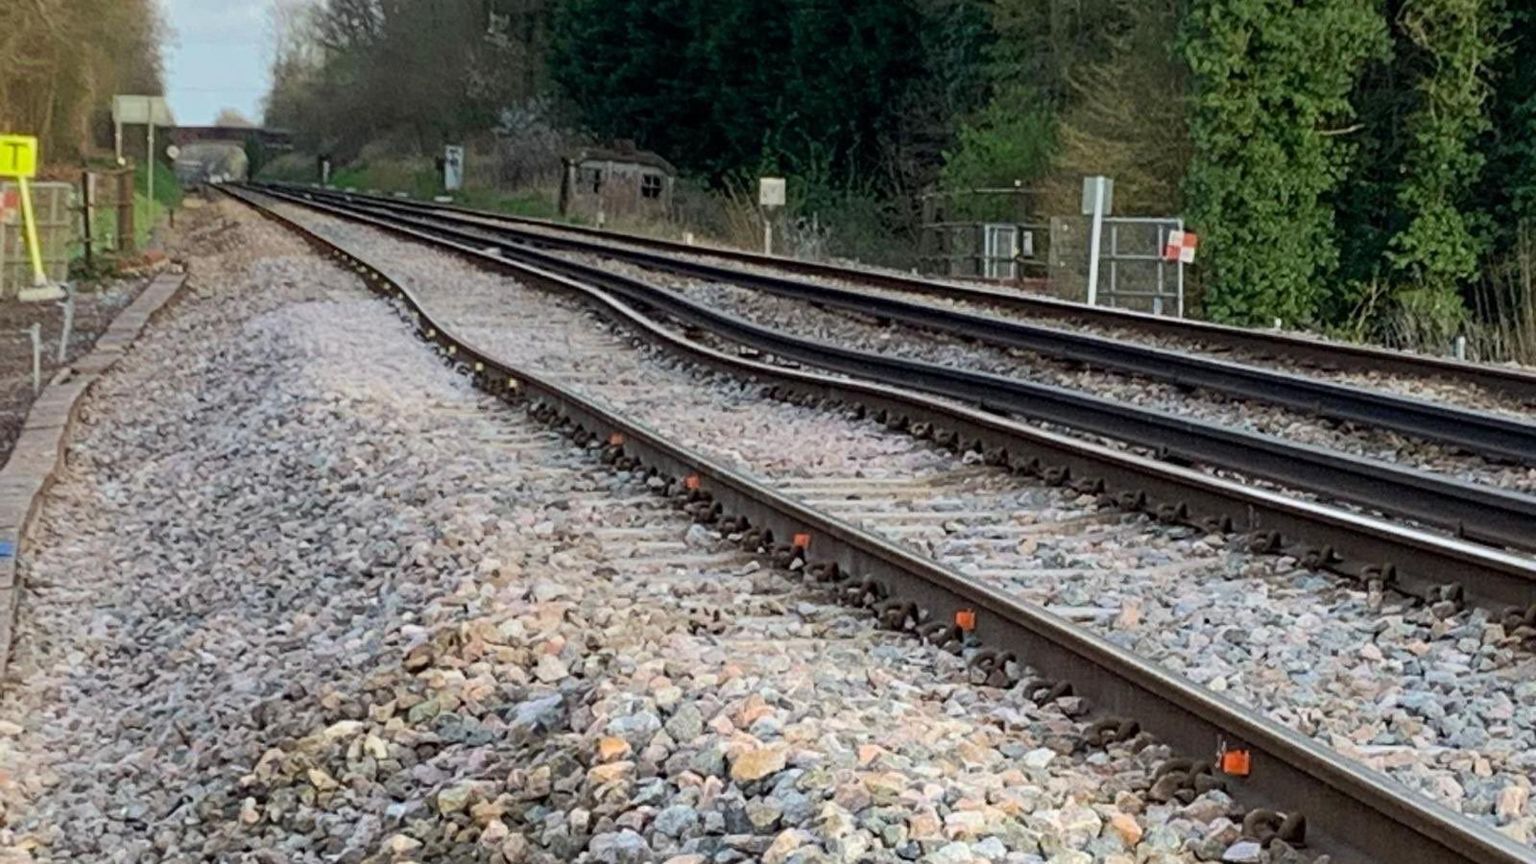 Uneven tracks between Tonbridge and Edenbridge